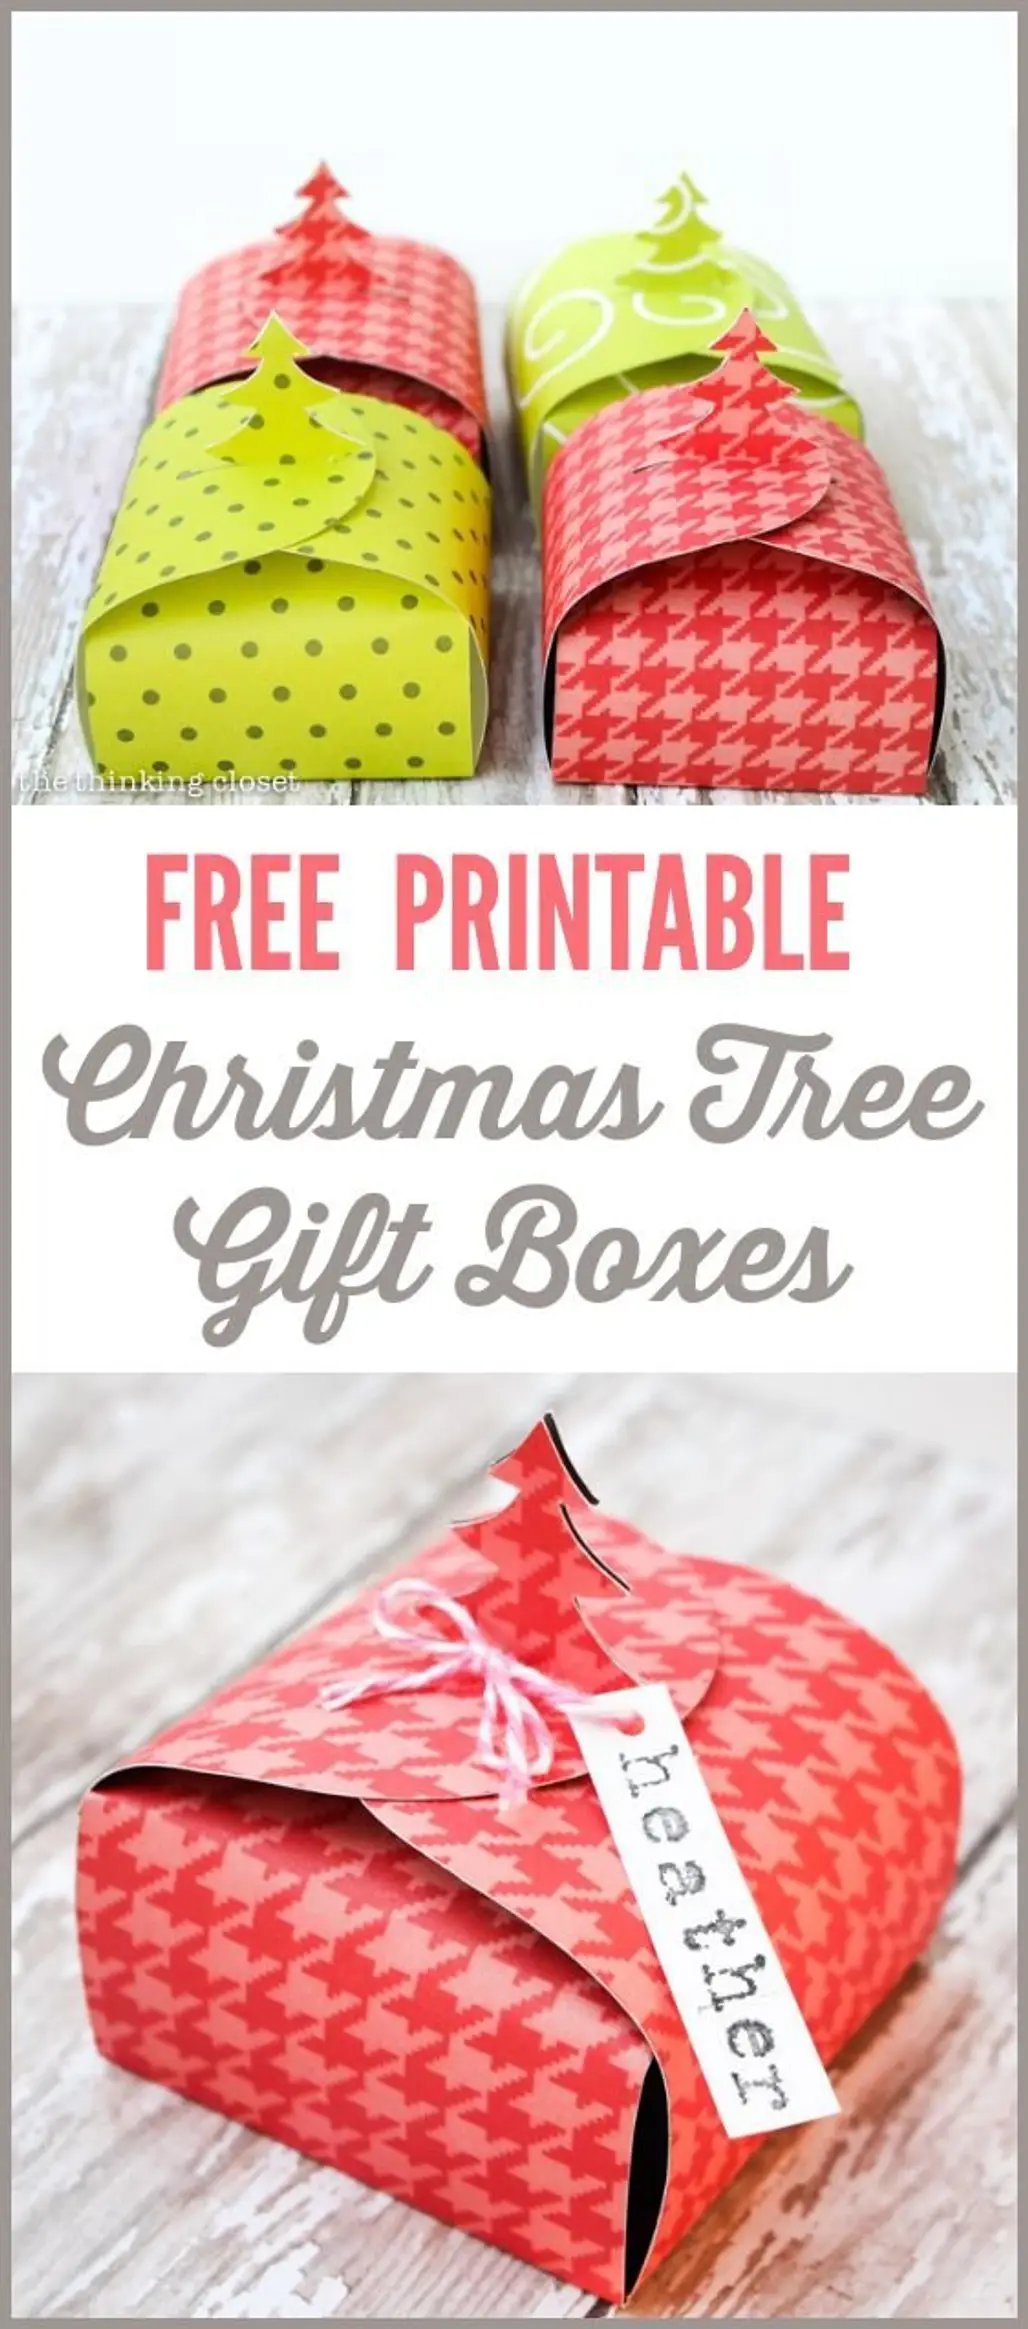 Free Printable Christmas Tree Gift Boxes